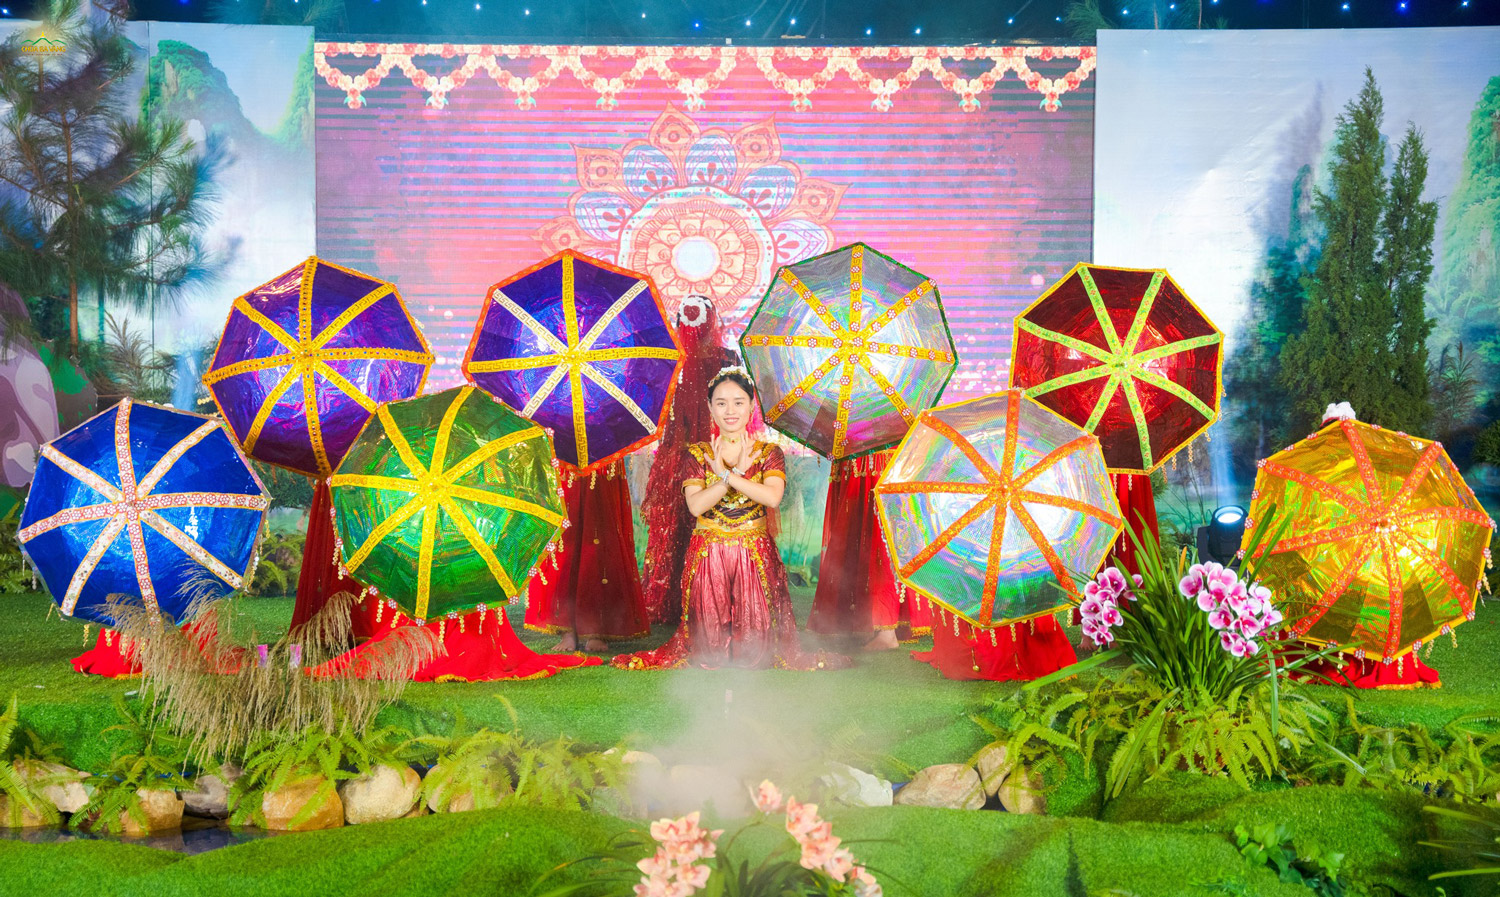   Những chiếc ô sắc màu cùng điệu múa vui tươi trong tiết mục múa Ấn Độ  